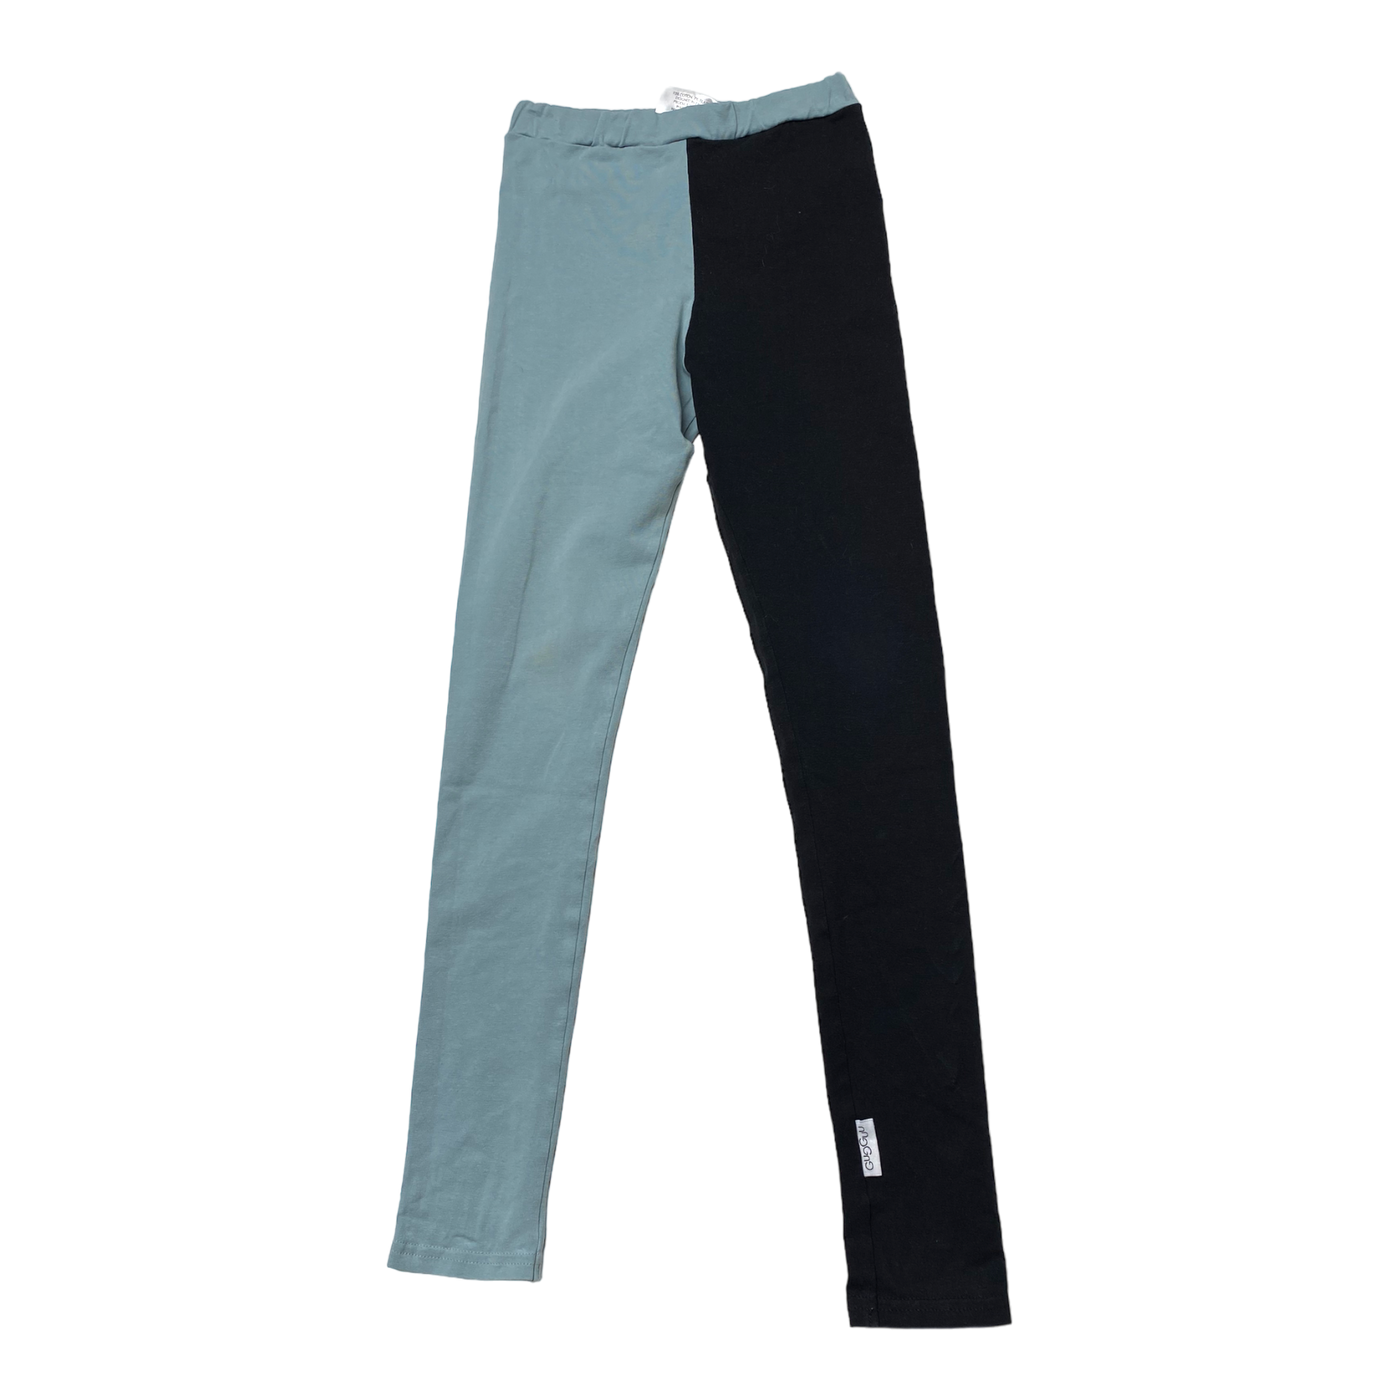 Gugguu leggings, black & turquoise | 122cm